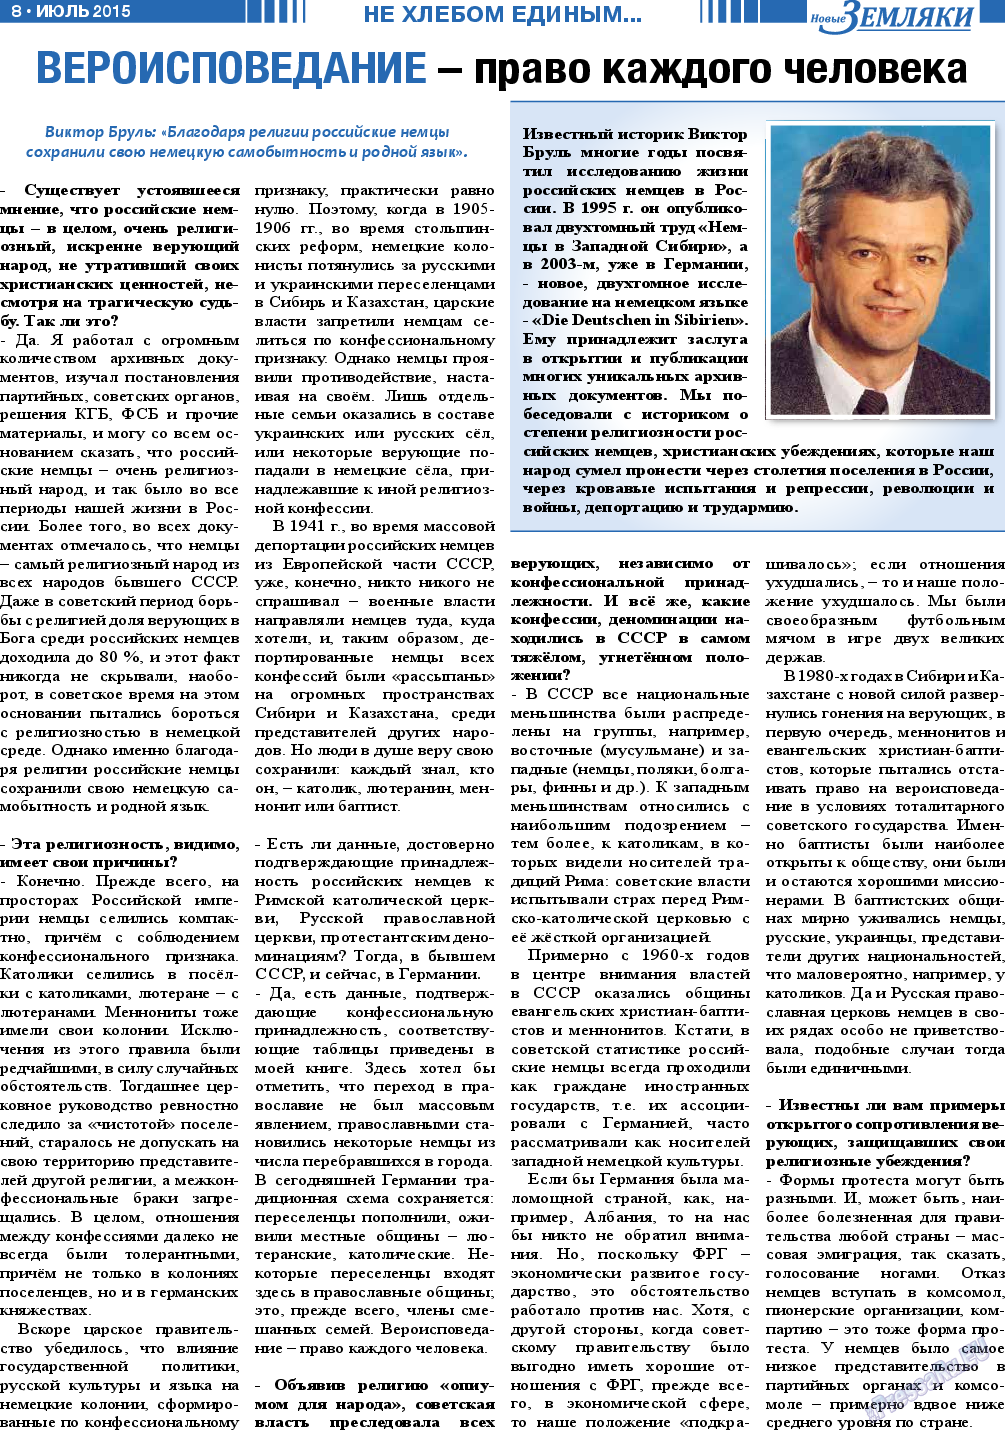 Новые Земляки (газета). 2015 год, номер 7, стр. 8